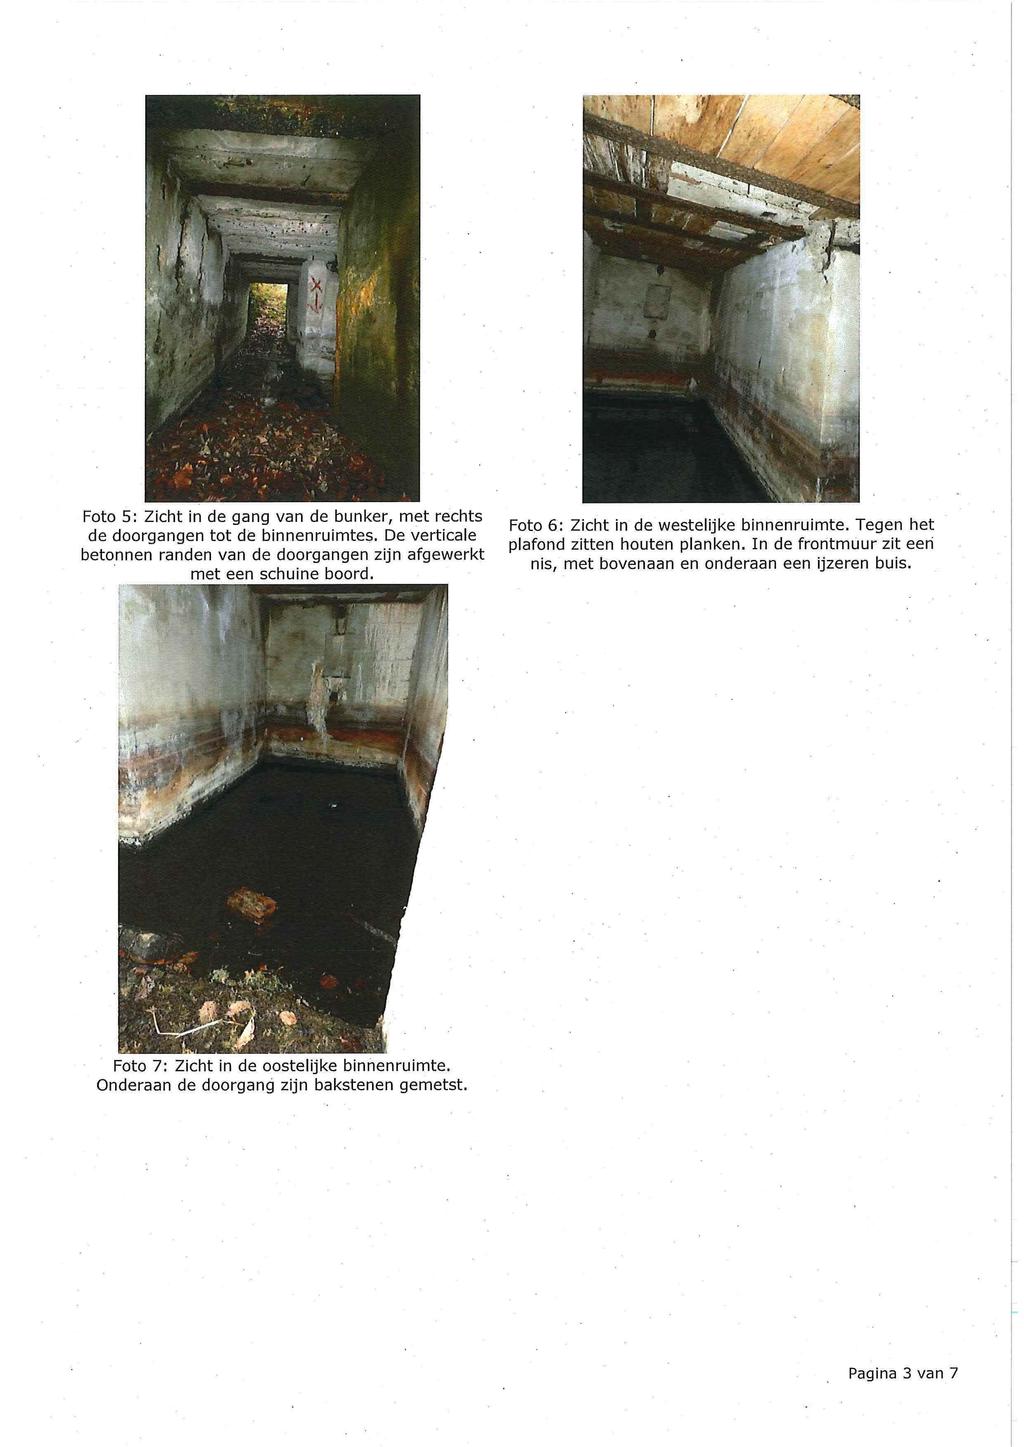 Foto 5: Zicht in de gang van de bunker, met rechts de doorgangen tot de binnenruimtes. De verticale betonnen randen van de doorgangen zijn afgewerkt met een schuine boord.,.",...-,...",.,. Foto 6: Zicht in de westelijke binnenruimte.